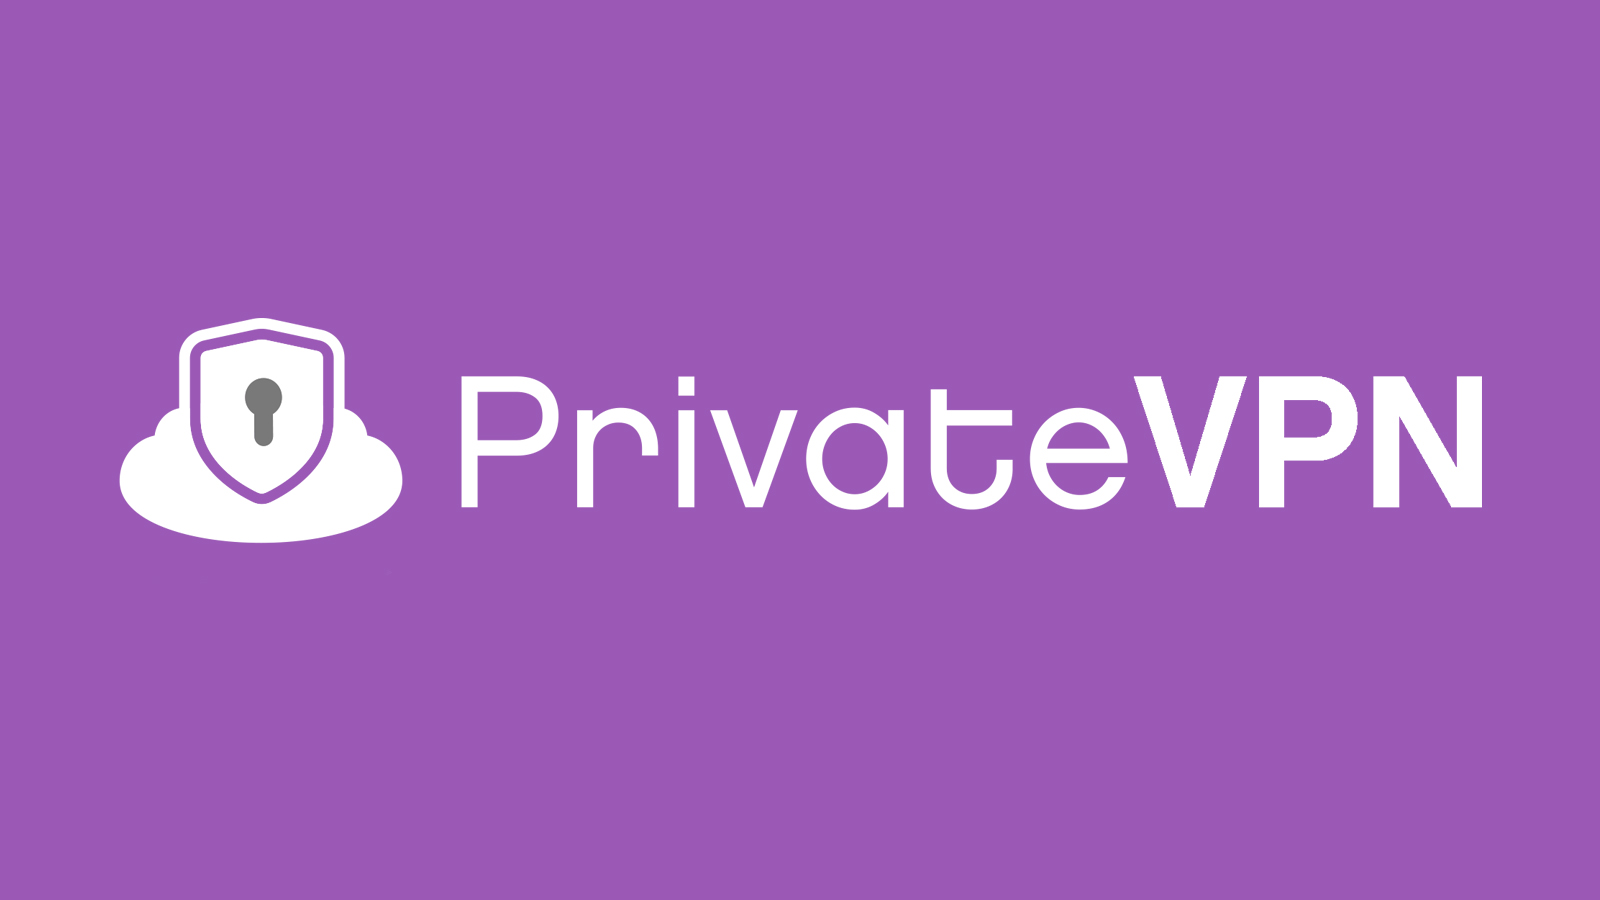 PrivateVPN 4.0.9 Crack & Registration Key Free Download [Latest] 2022